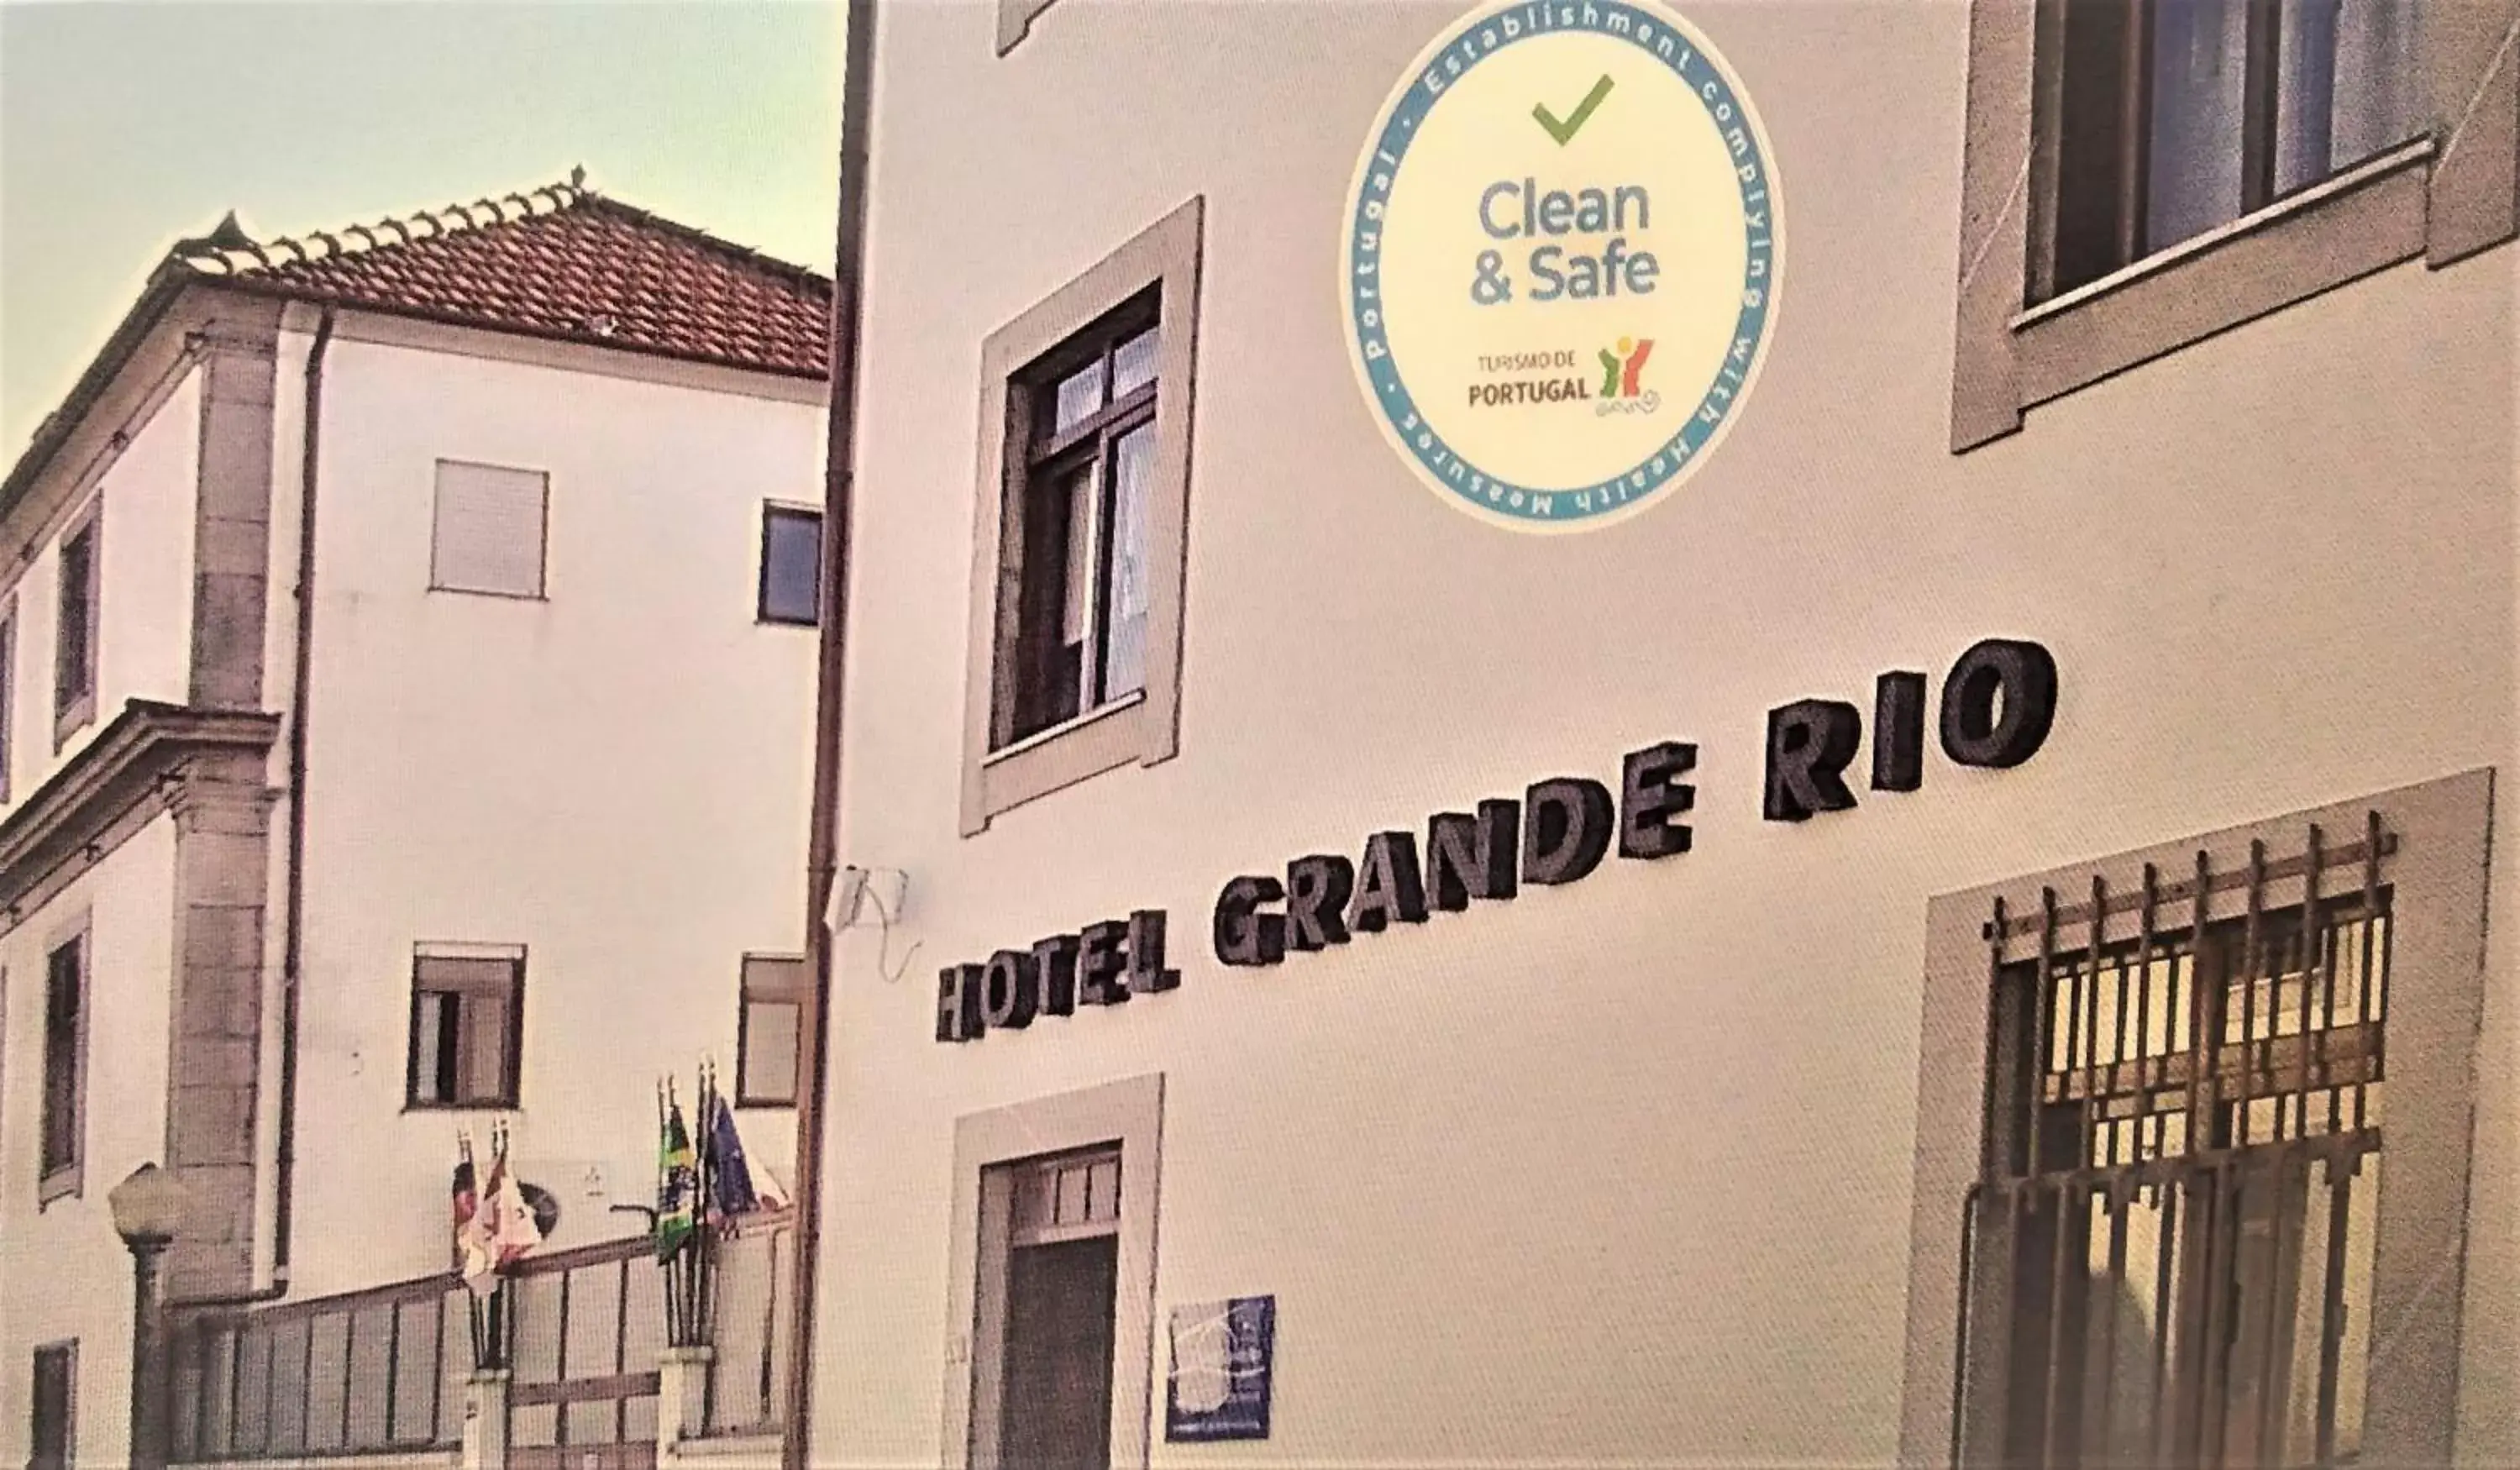 Facade/entrance in Hotel Grande Rio